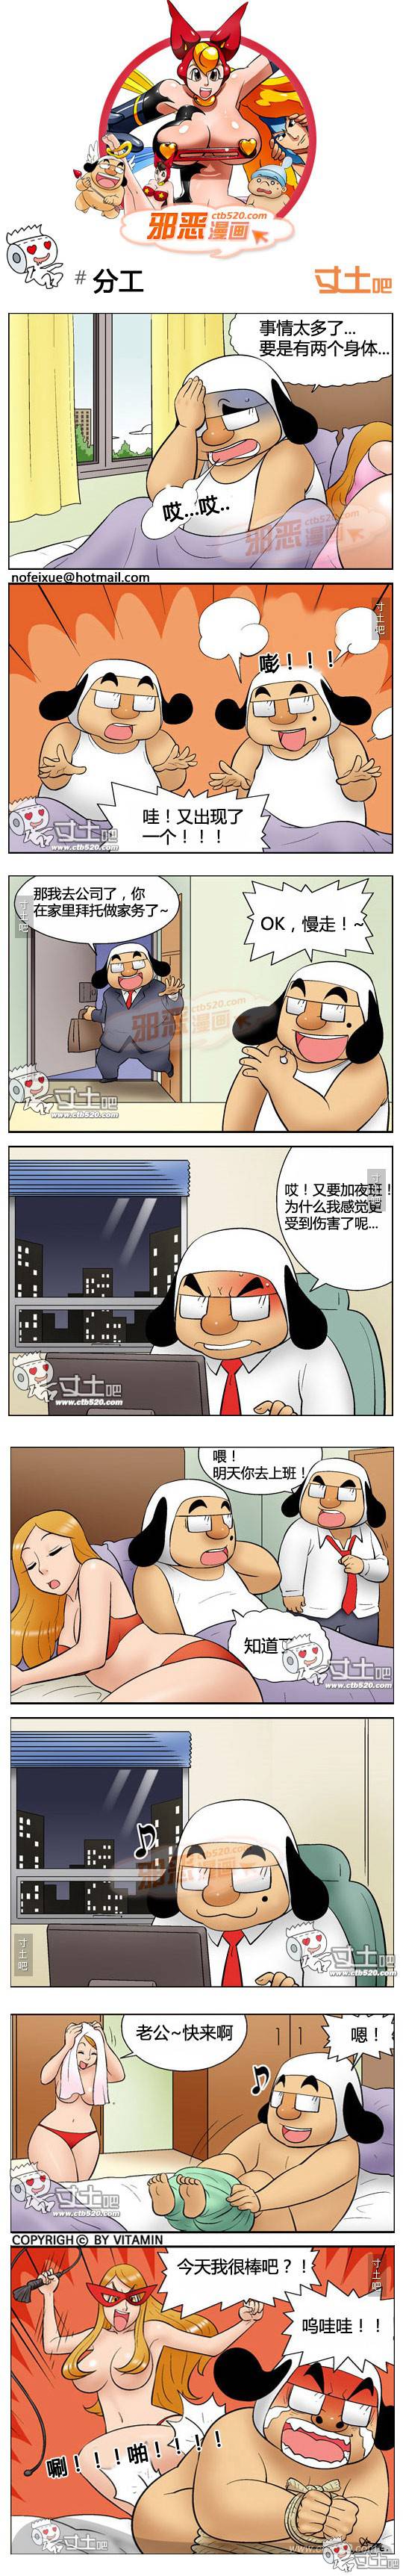 韩国幽默爆笑邪恶漫画之分工